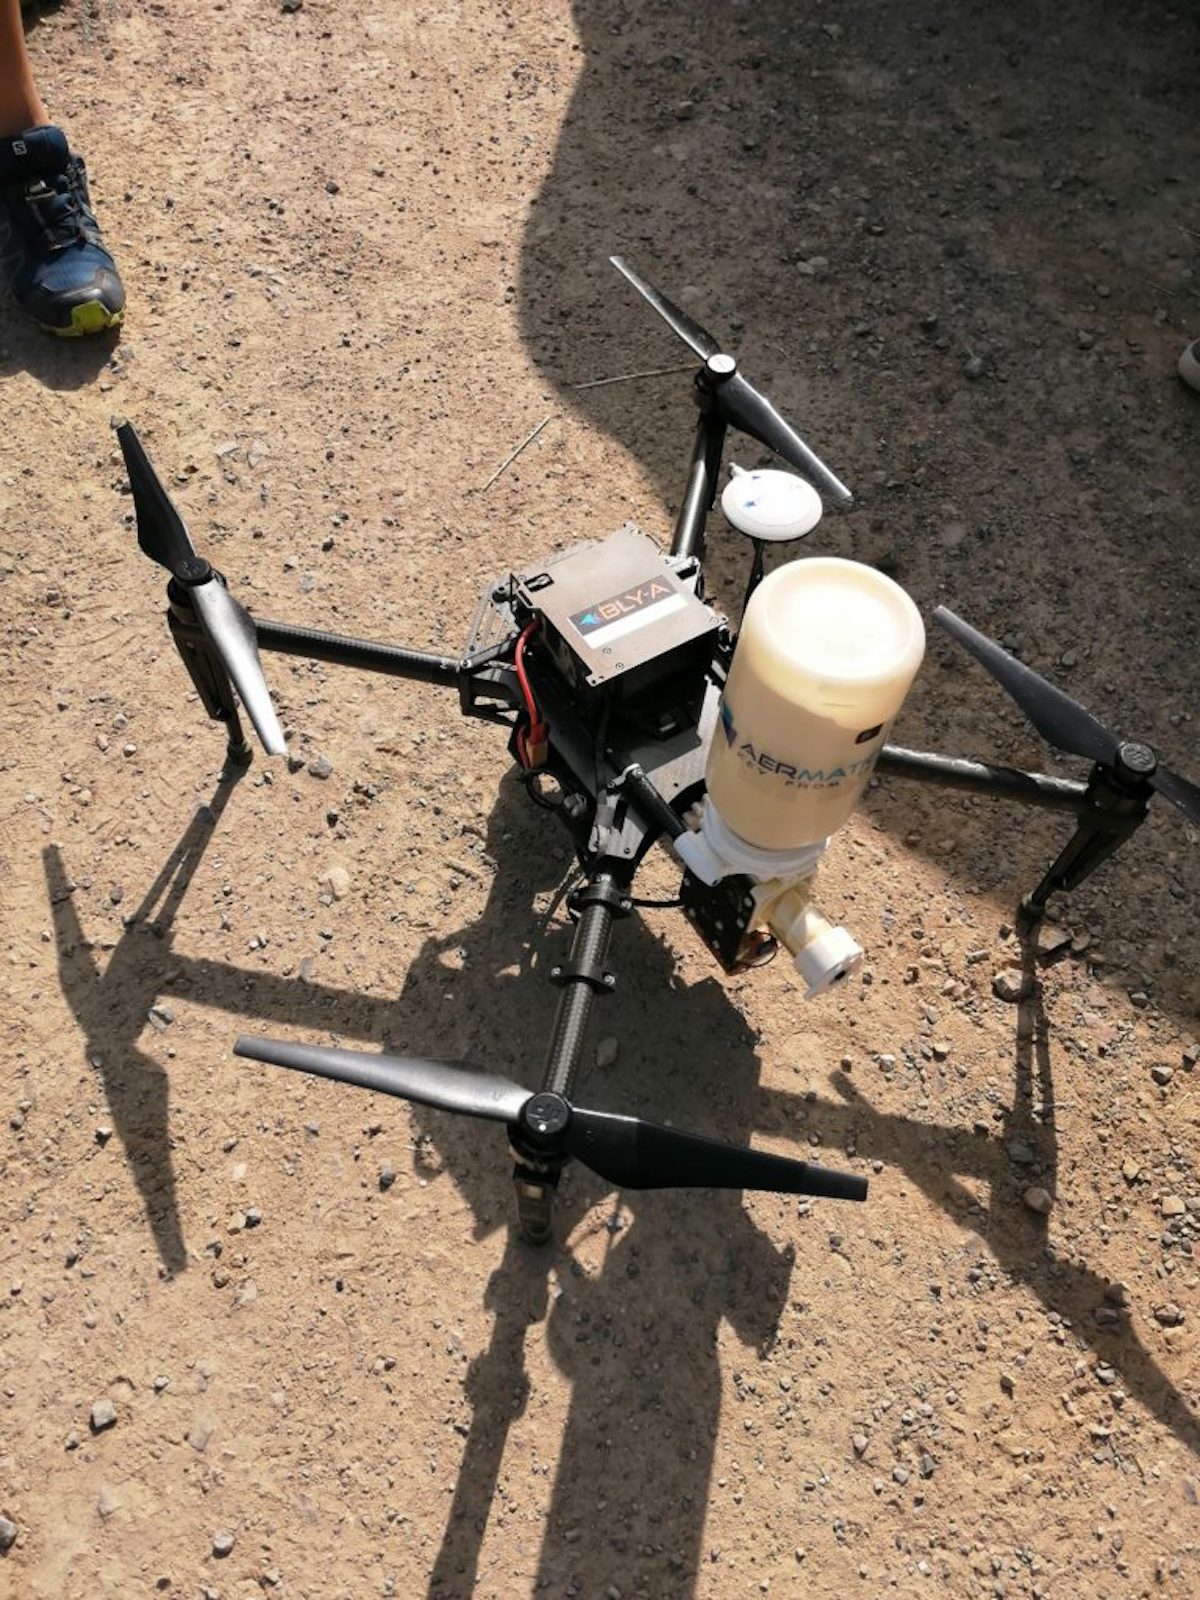 Il drone usato nelle prove